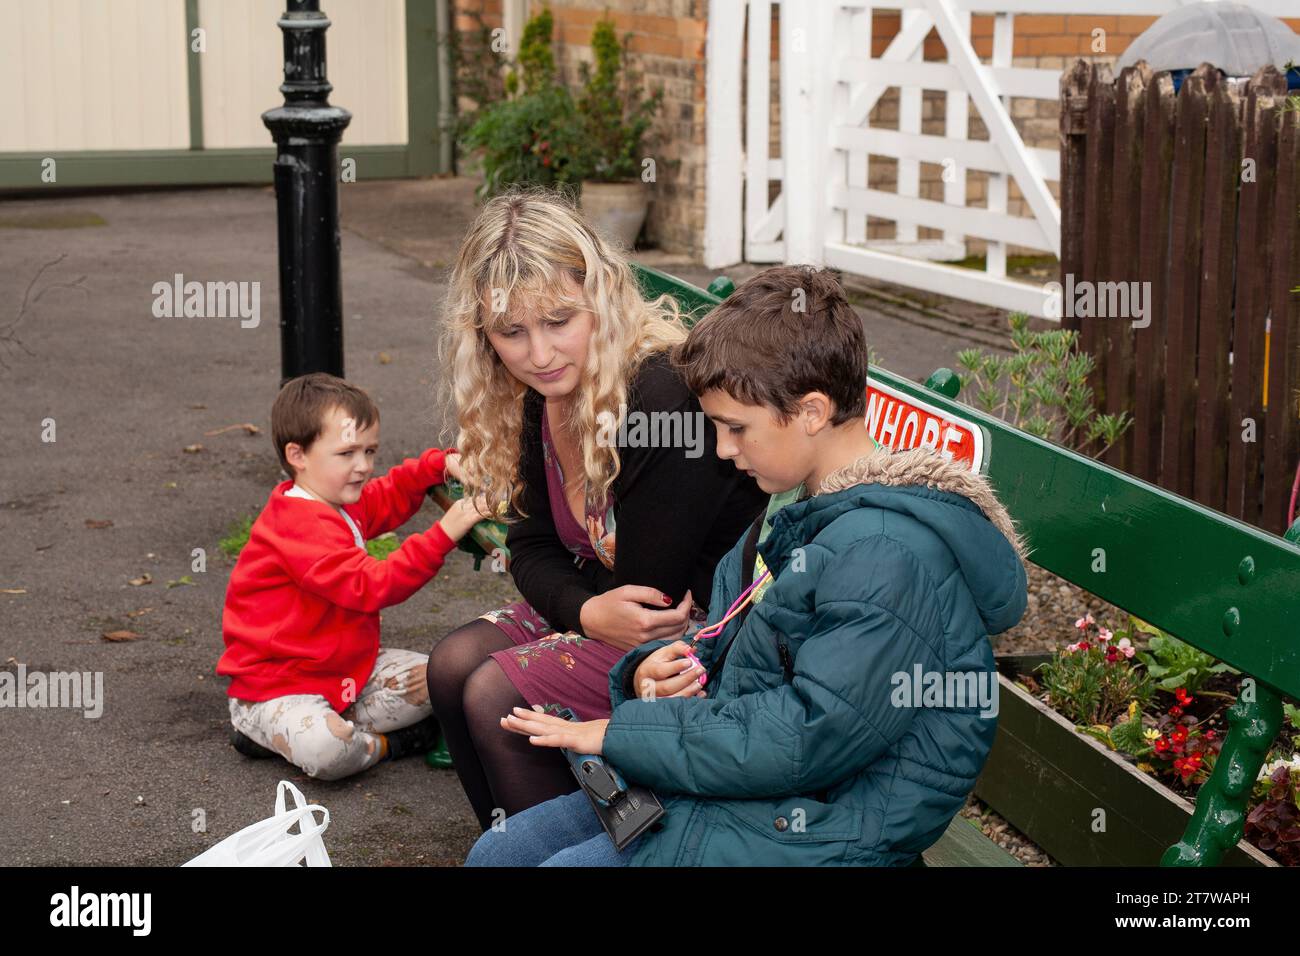 Family Bonding presso l'Heritage Station: Una scenografia pittoresca in una tradizionale stazione storica inglese in cui una giovane madre si impegna con i bambini Foto Stock